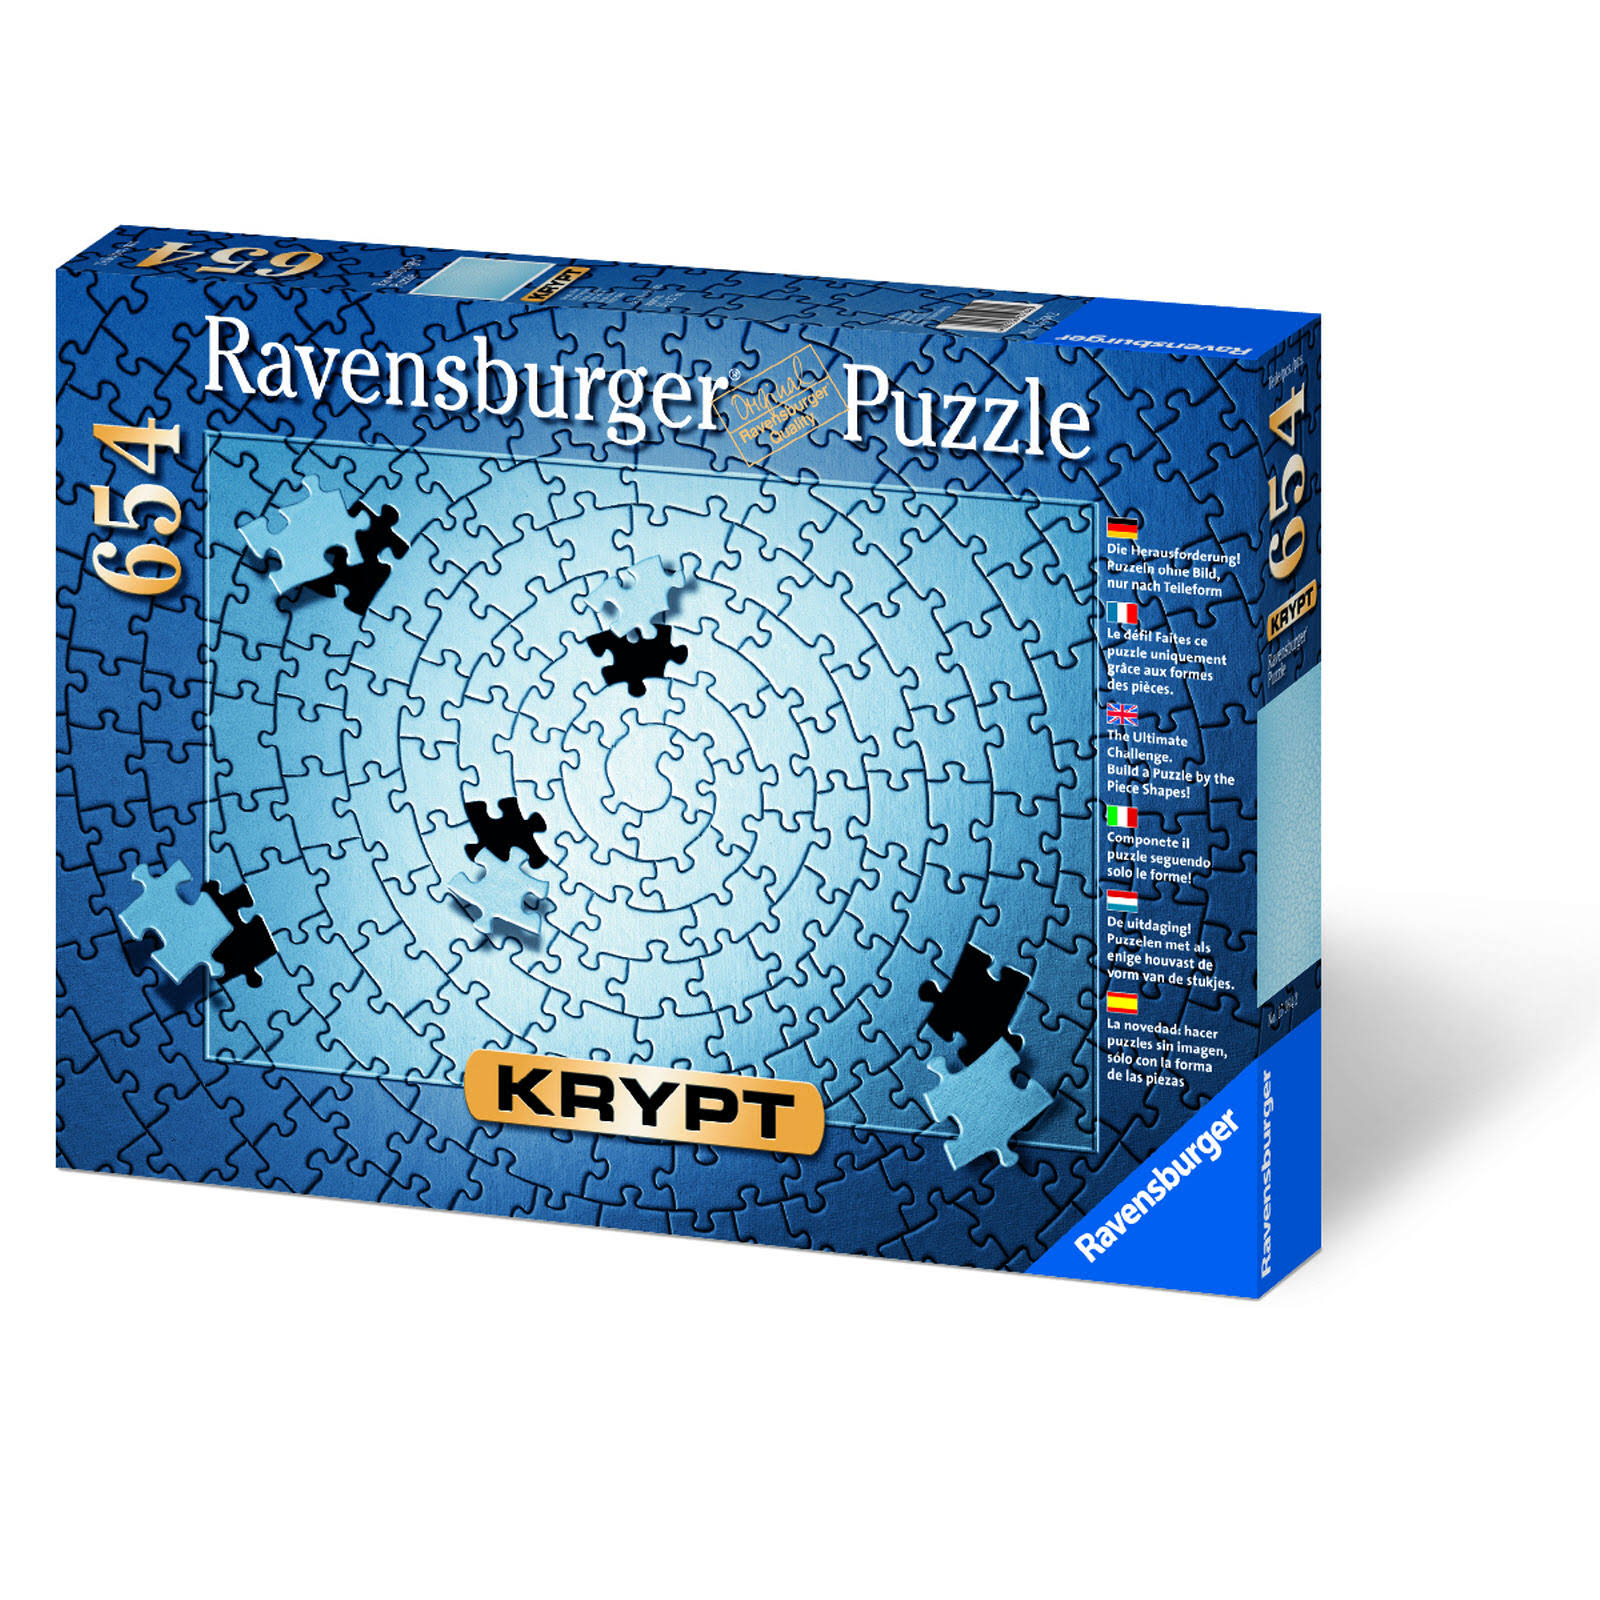 Krypt Silver Blank Puzzle Challenge - 654 Piece